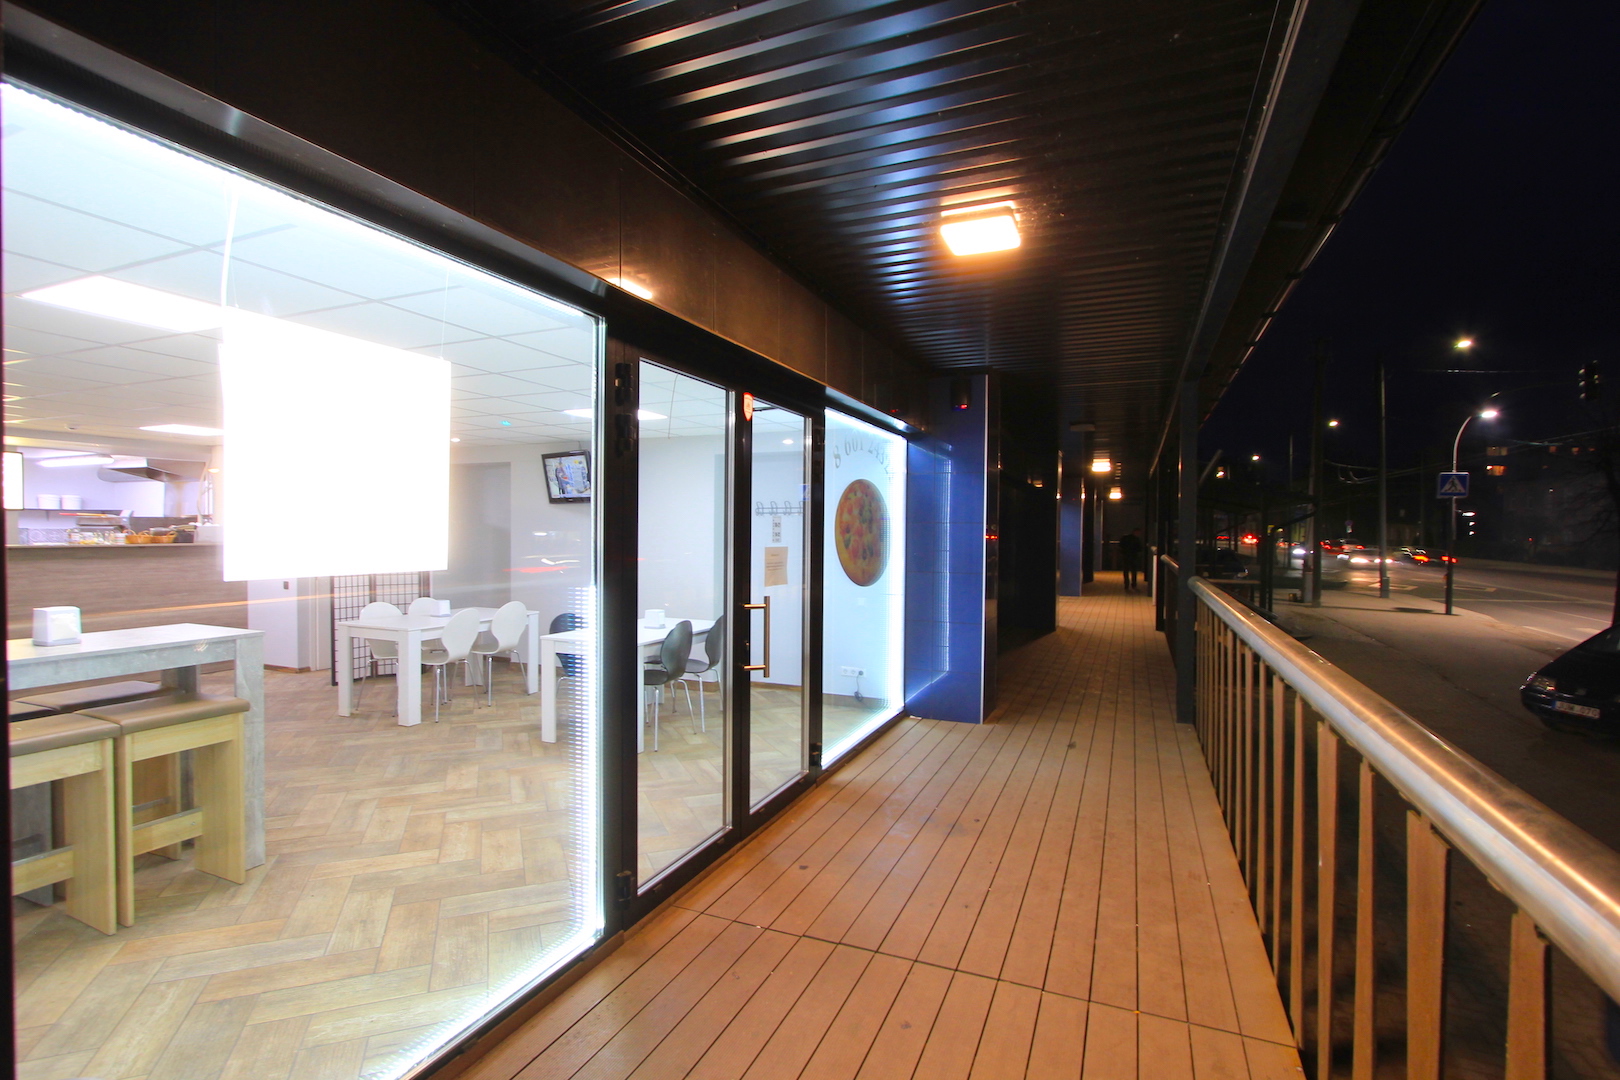 Išnuomojamos 42 - 85 m² prekybinės patalpos naujame verslo centre.